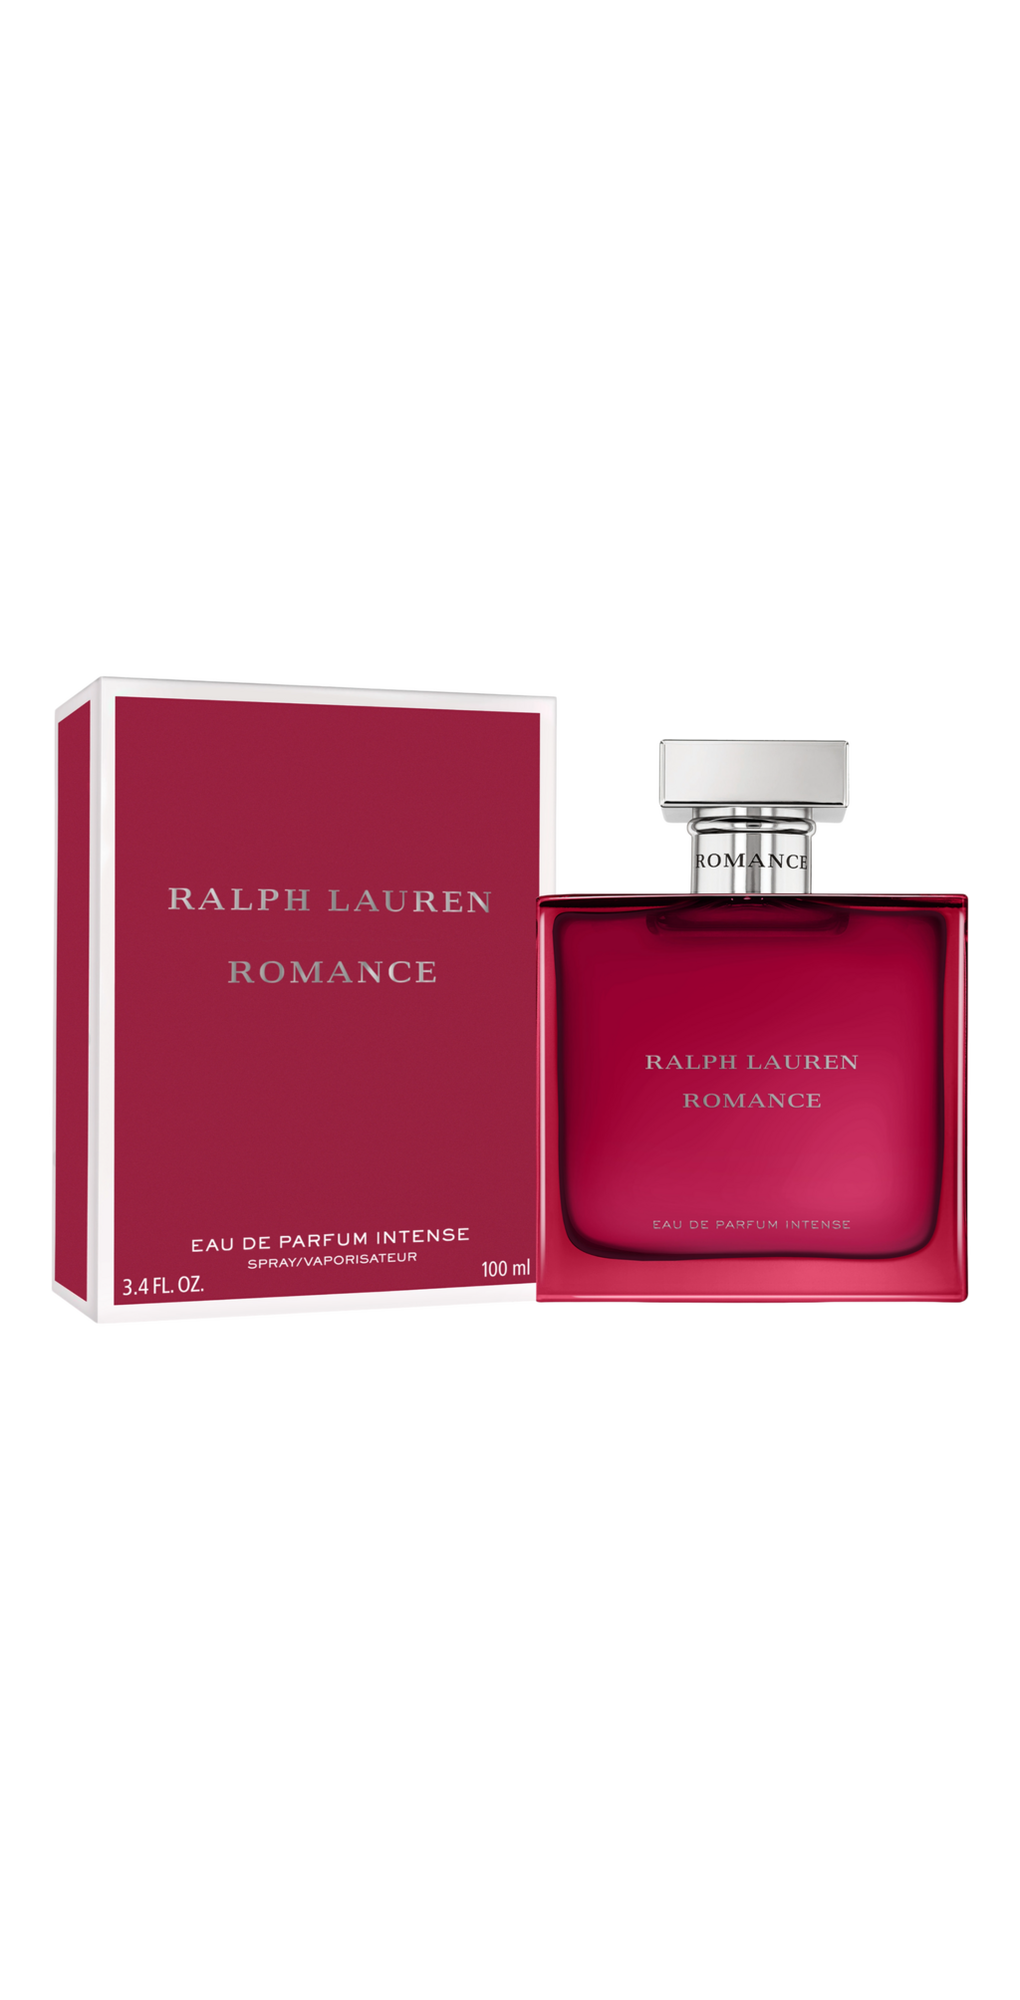 Romance Eau de Parfum Intense - Ralph Lauren